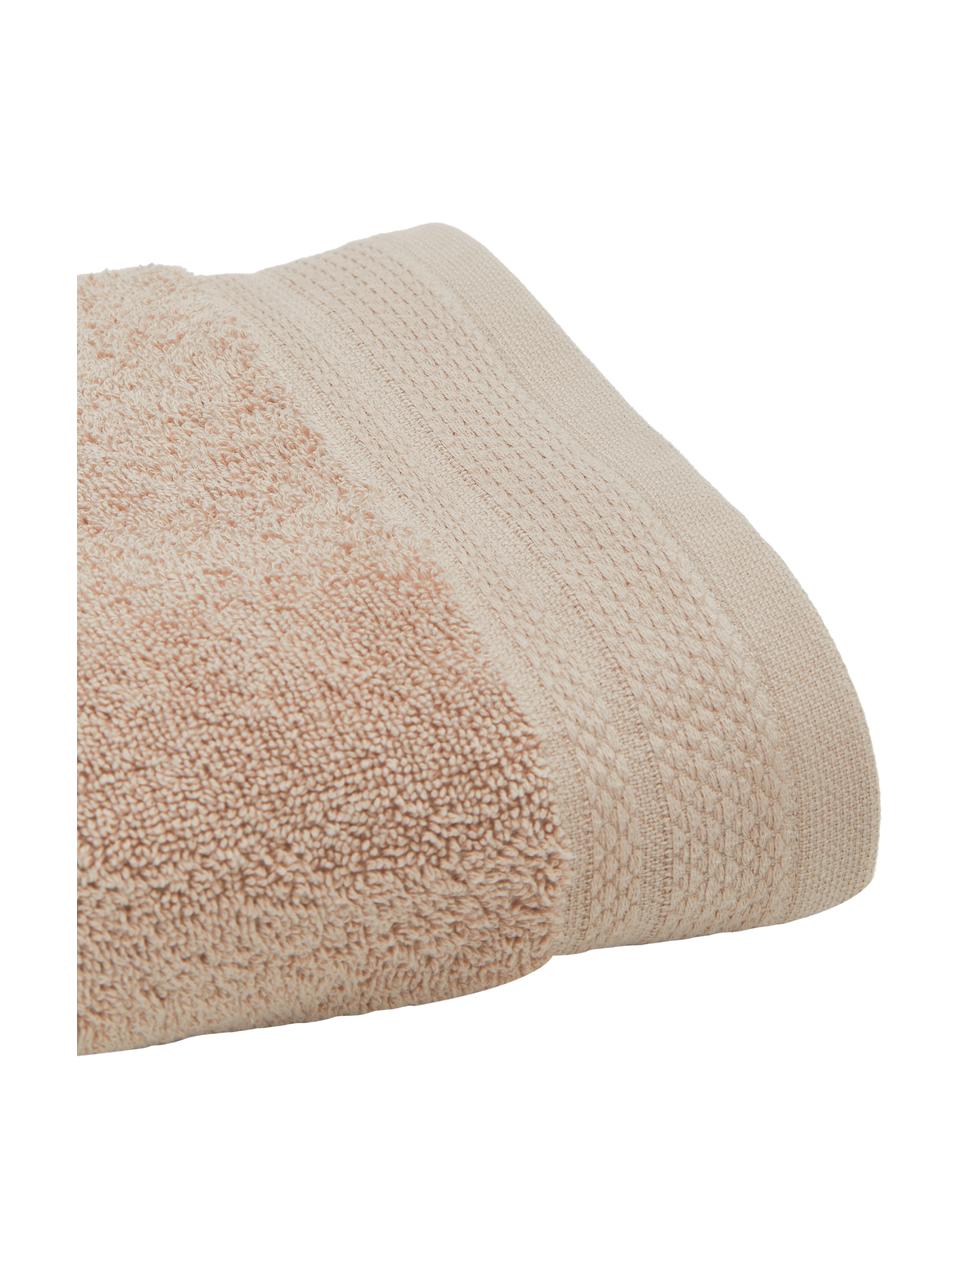 Lot de serviettes de bain en coton bio Premium, 3 élém., 100 % coton bio certifié GOTS (par GCL International, GCL-300517)
Qualité supérieure 600 g/m², Taupe, Lot de différentes tailles